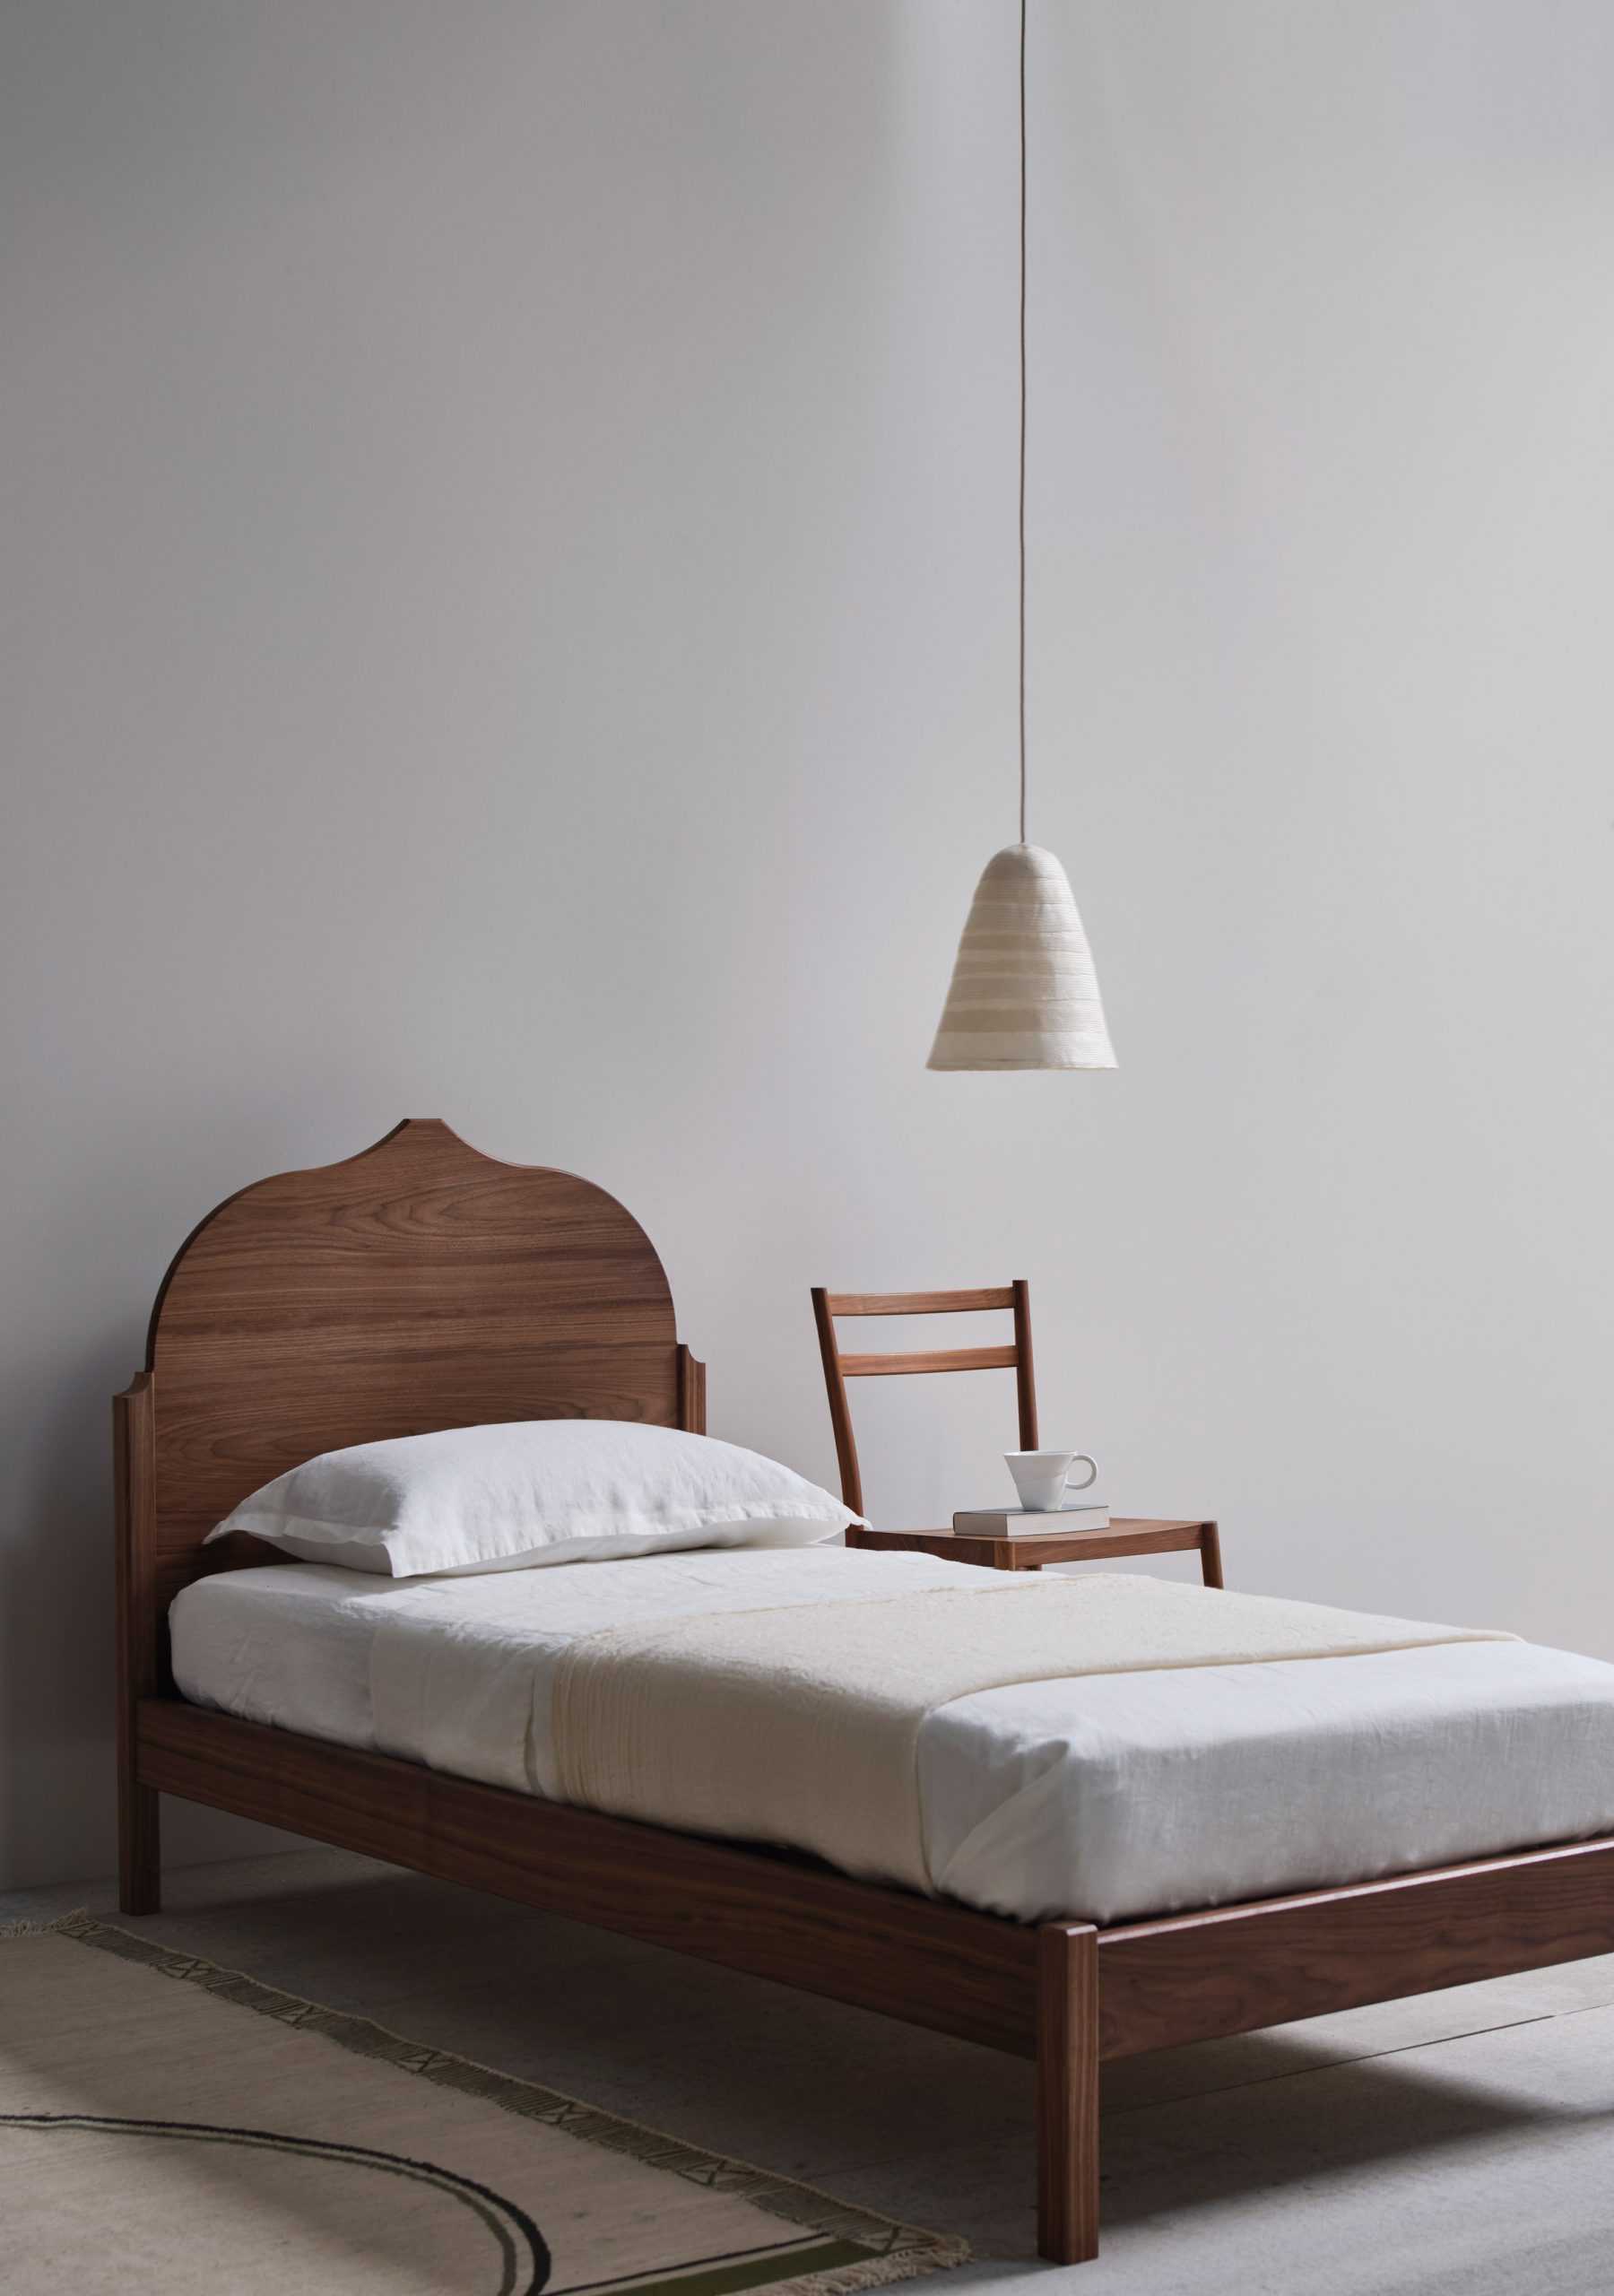 Pinch将经典材料与最小形状配对用于最新卧室家具